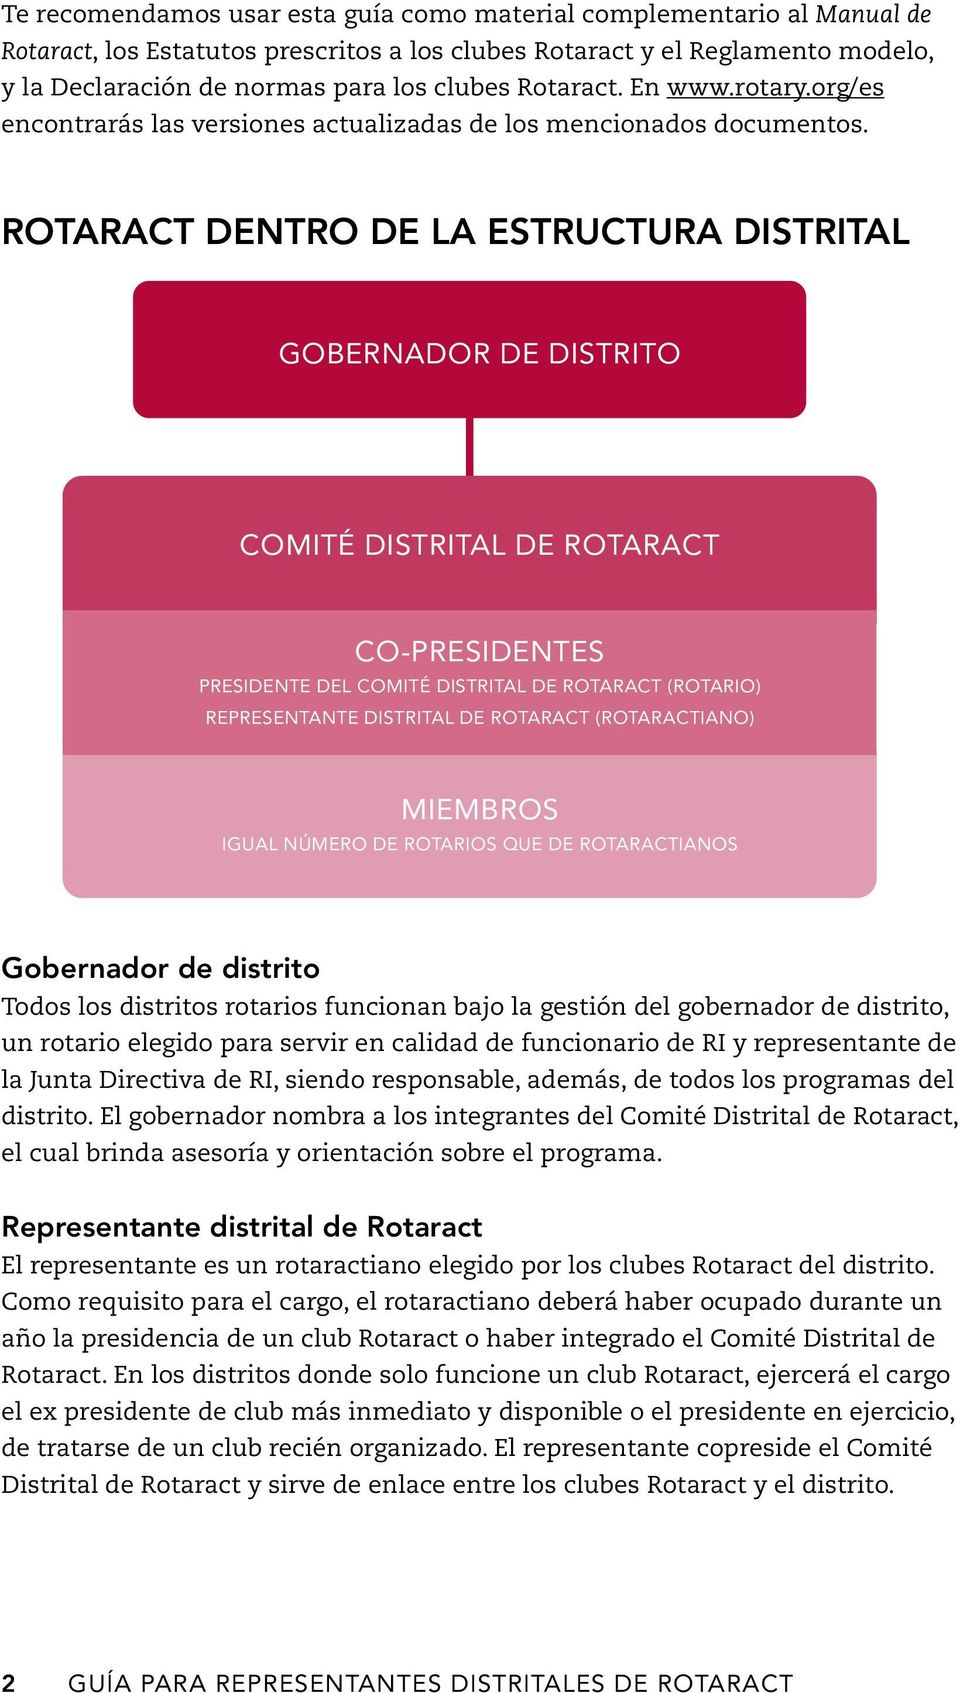 Rotaract dentro de la estructura distrital GOBERNADOR DE DISTRITO COMITÉ DISTRITAL DE ROTARACT CO-PRESIDENTES PRESIDENTE DEL COMITÉ DISTRITAL DE ROTARACT (ROTARIO) REPRESENTANTE DISTRITAL DE ROTARACT